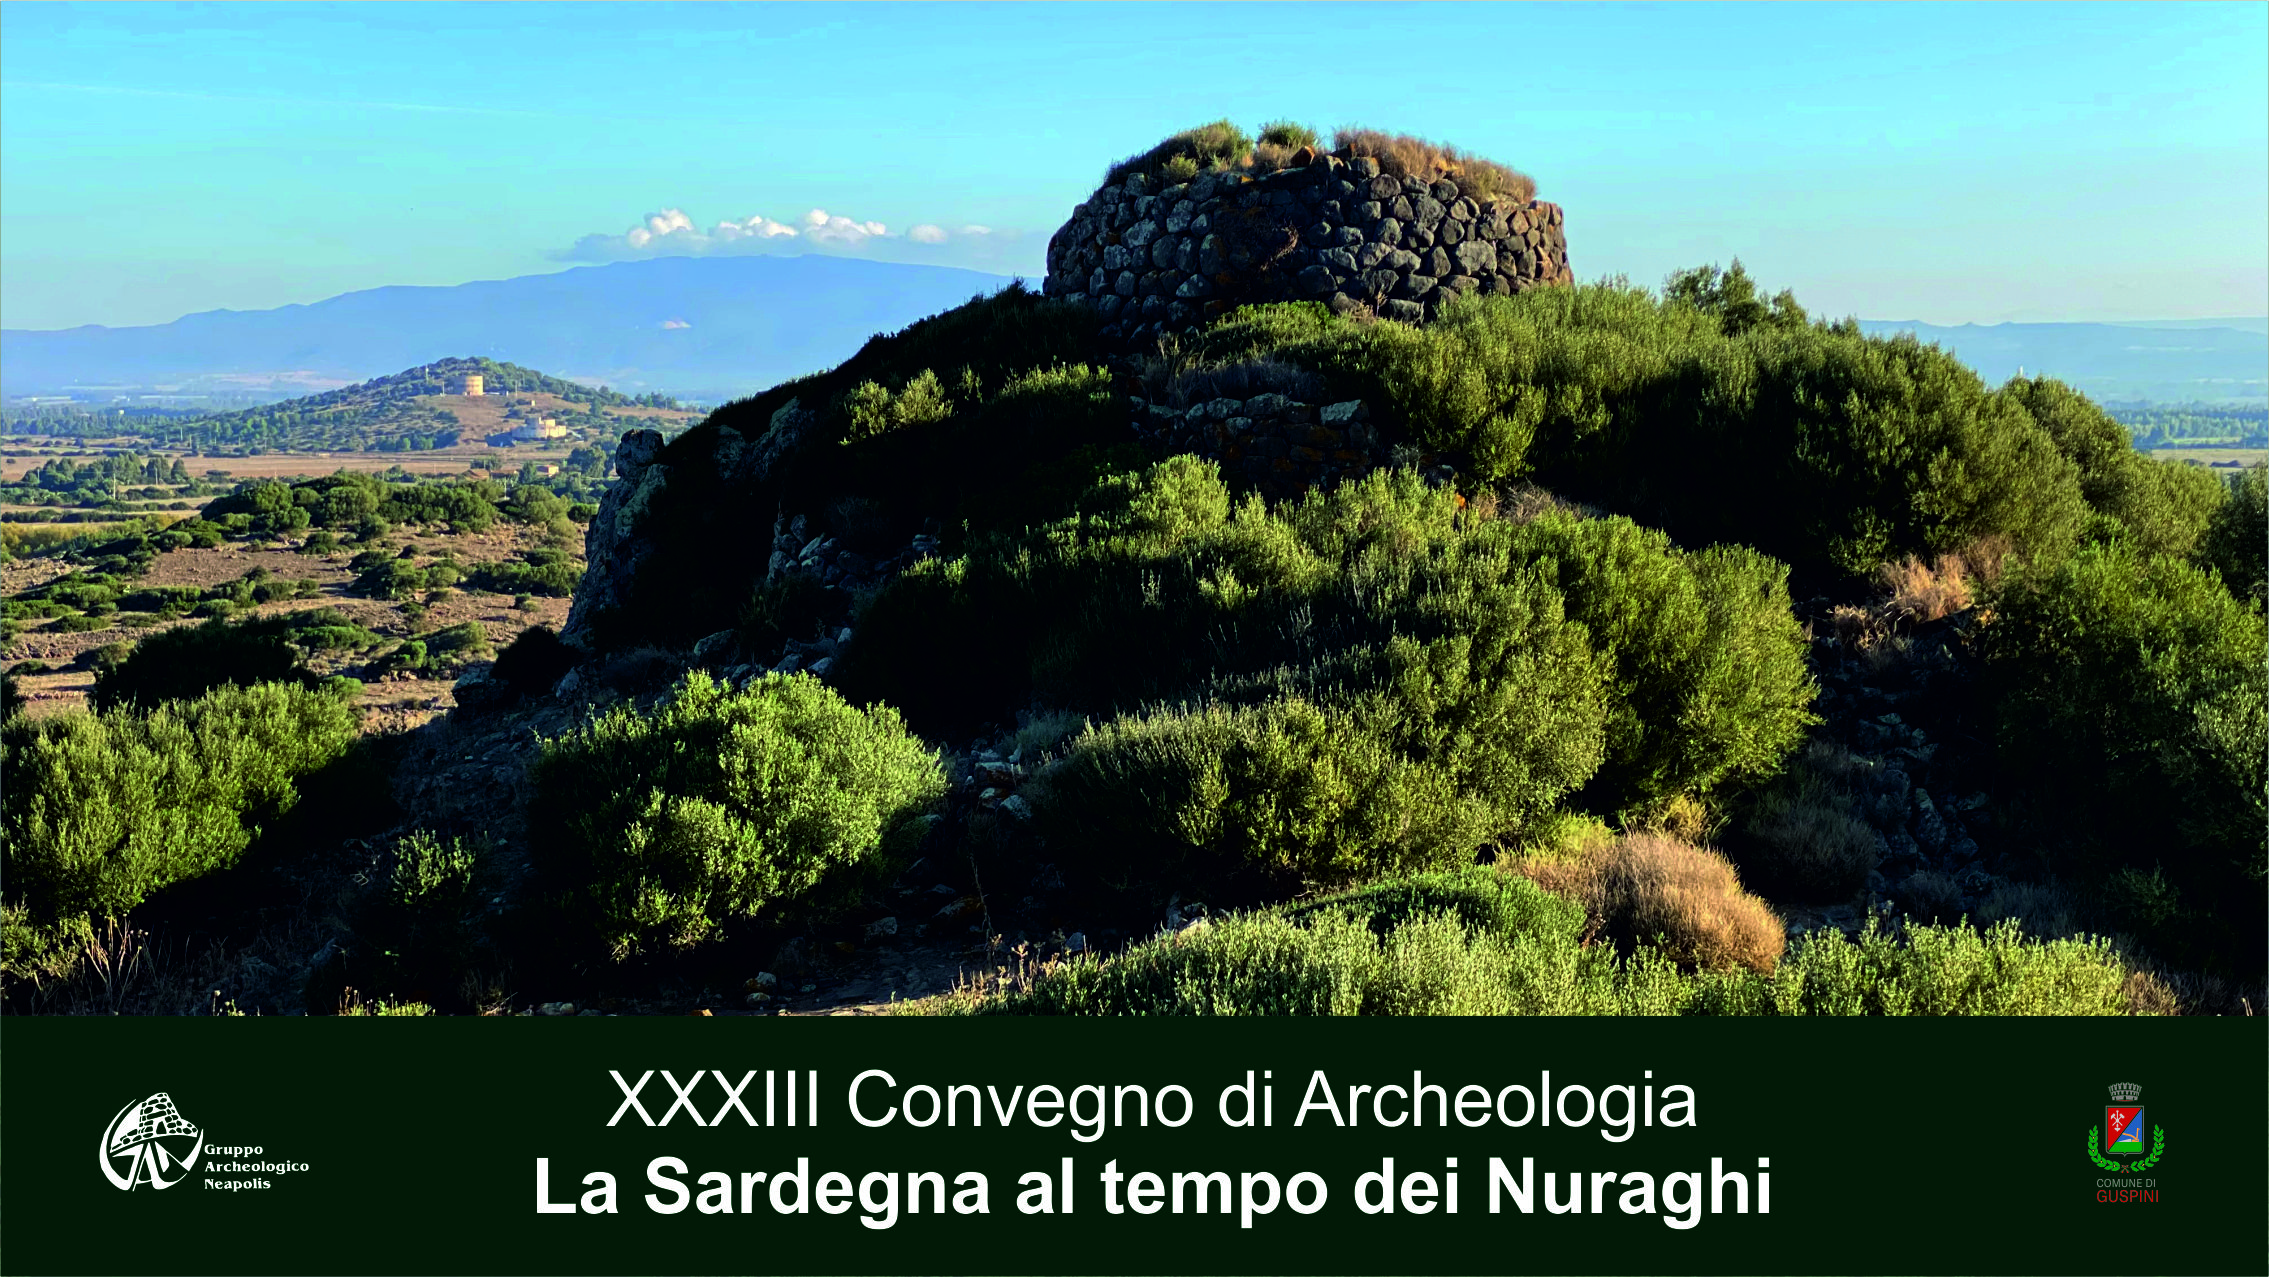 XXXIII Convegno di Archeologia